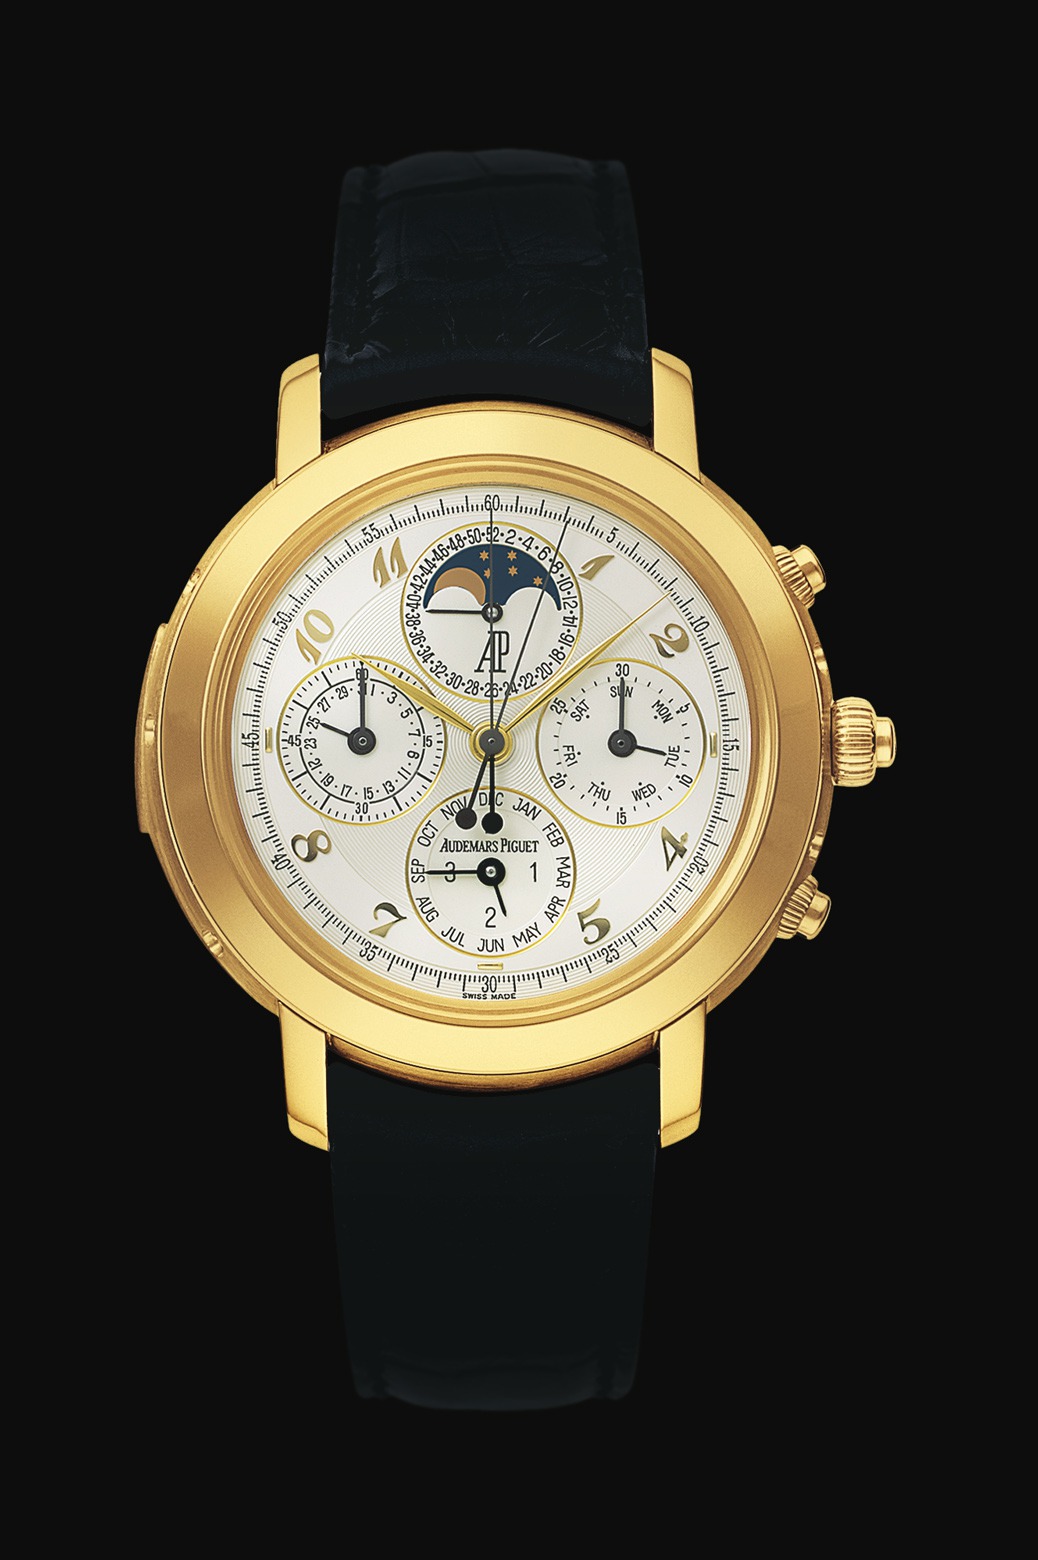 Audemars Piguet Jules Audemars Grande Complication Yellow Gold watch REF: 25866BA.OO.D002CR.02